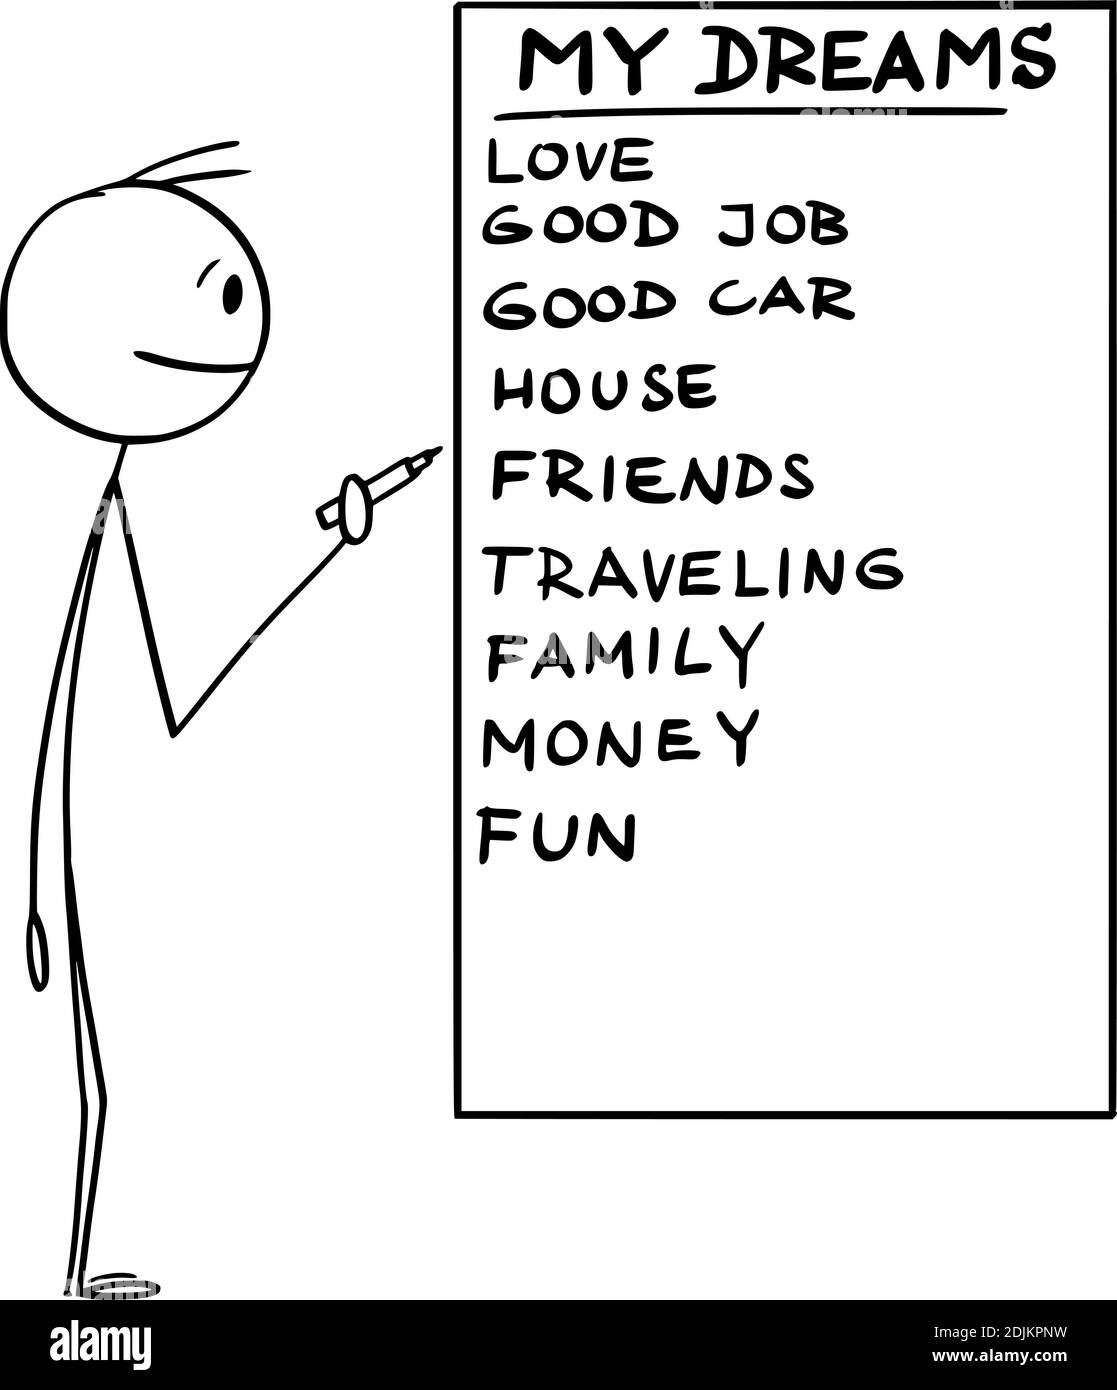 Figura del cartoon vettoriale dell'uomo che tiene il marcatore o la penna e che scrive la lista dei suoi sogni di vita sulla lavagna. Illustrazione Vettoriale